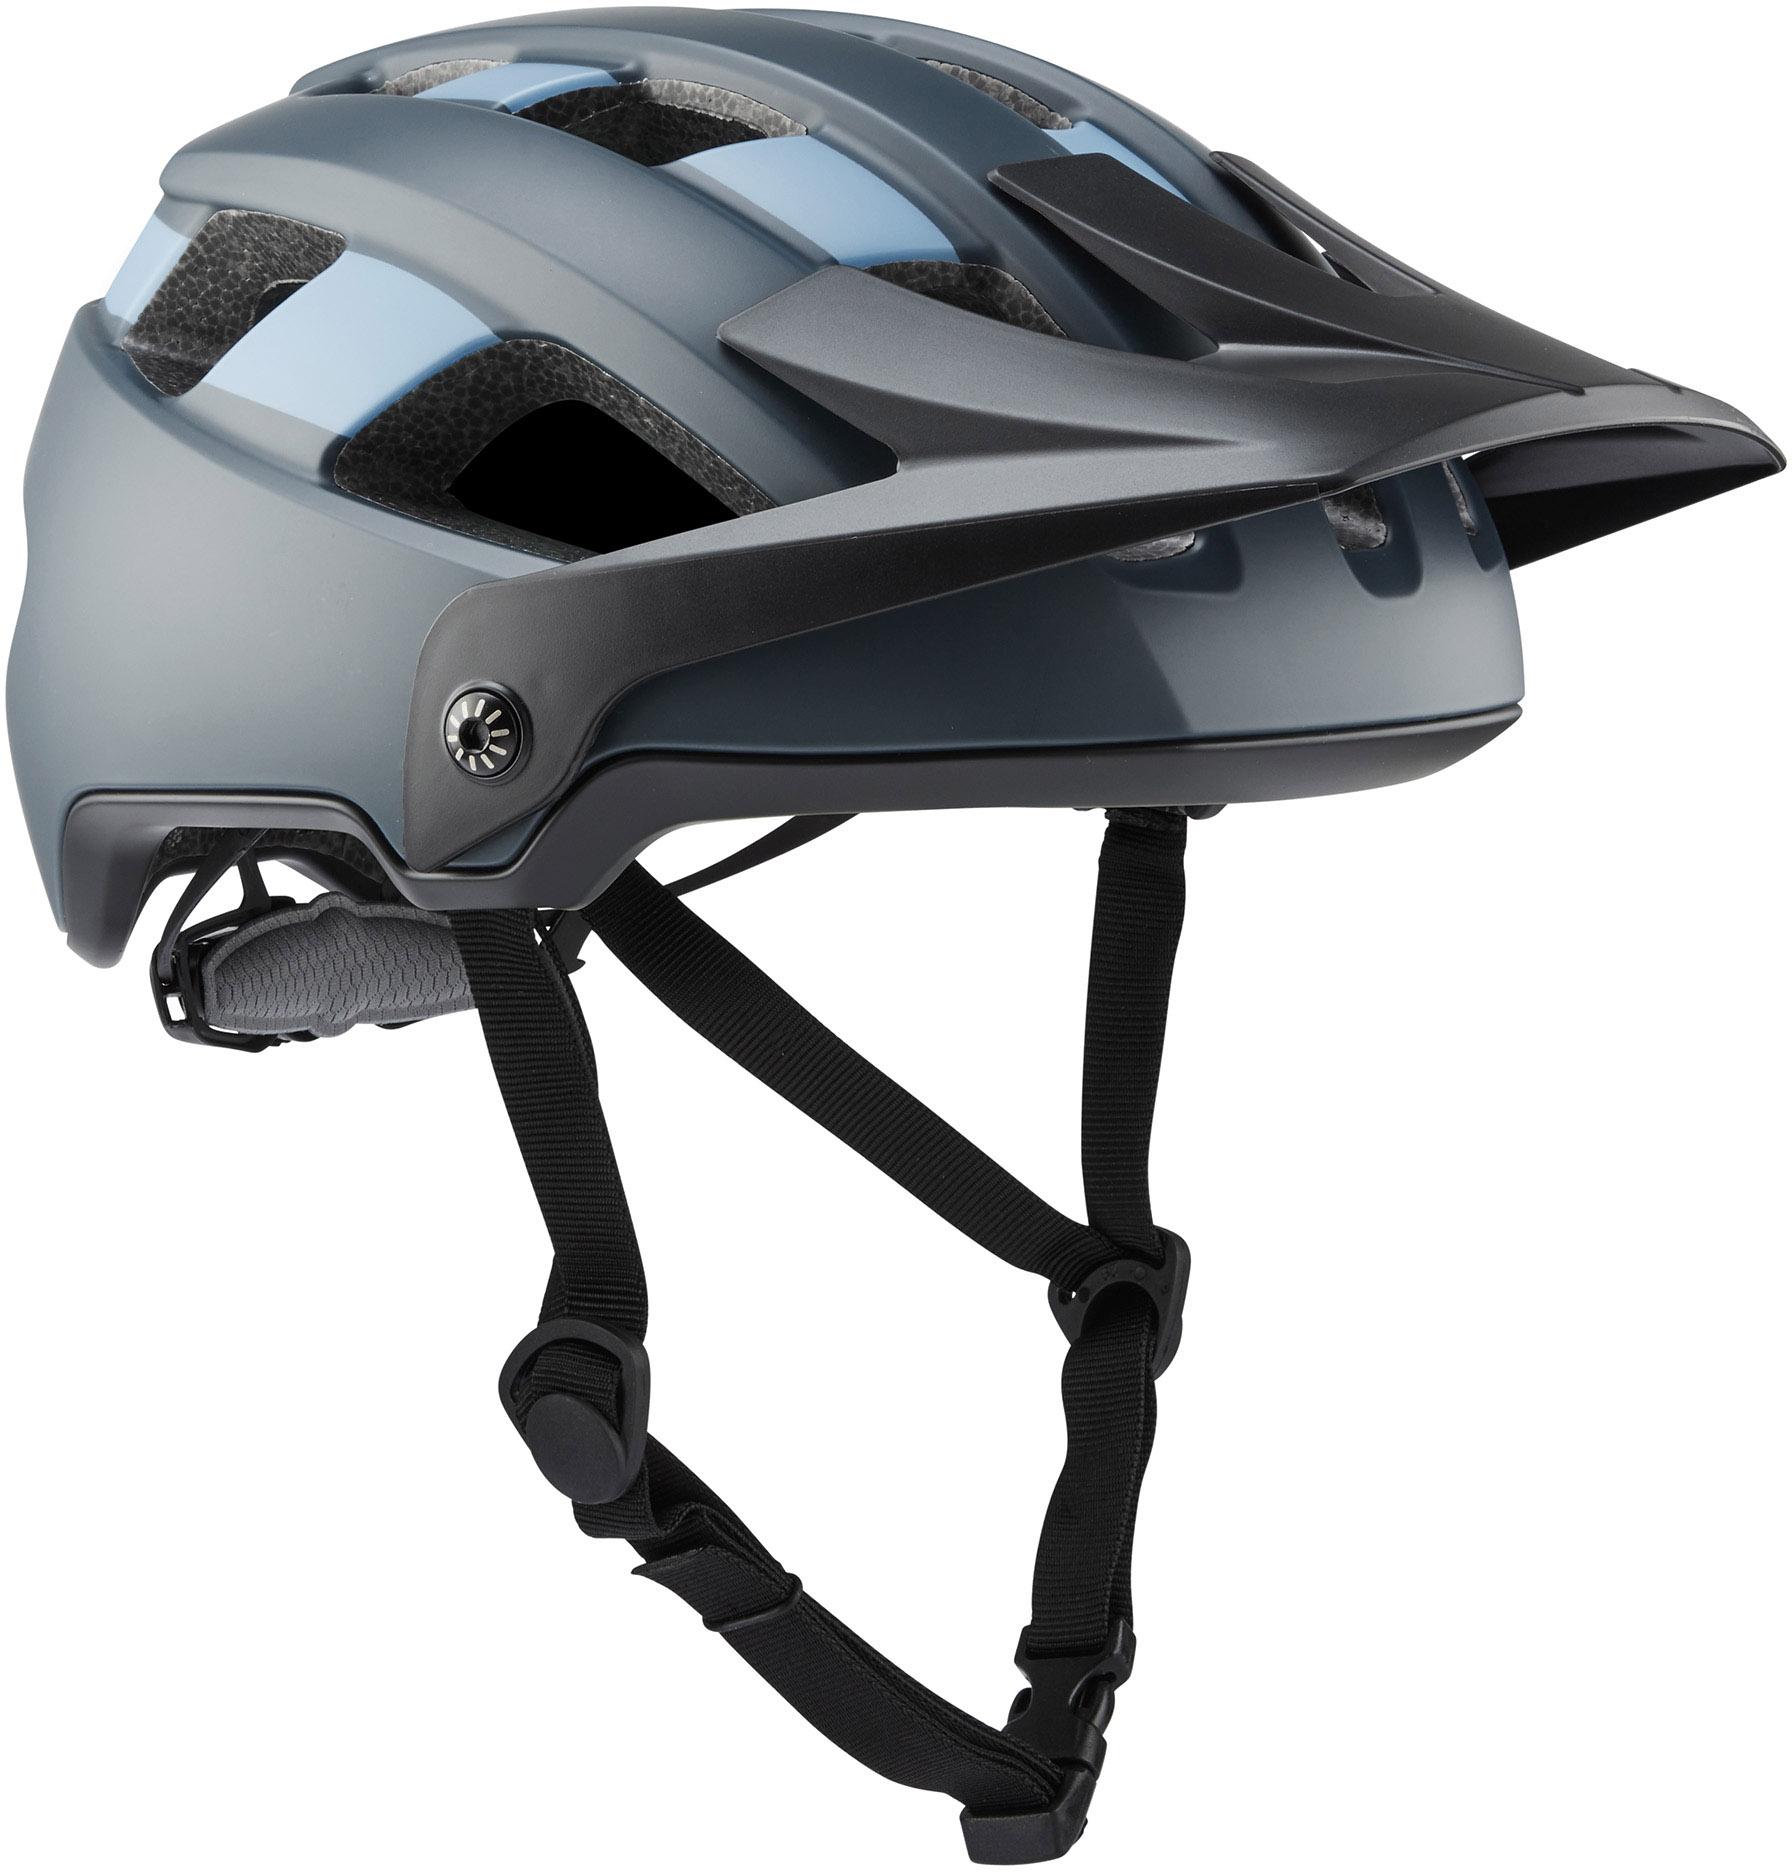 Brand-x Eh1 Enduro Mtb Cycling Helmet - Slate/blue